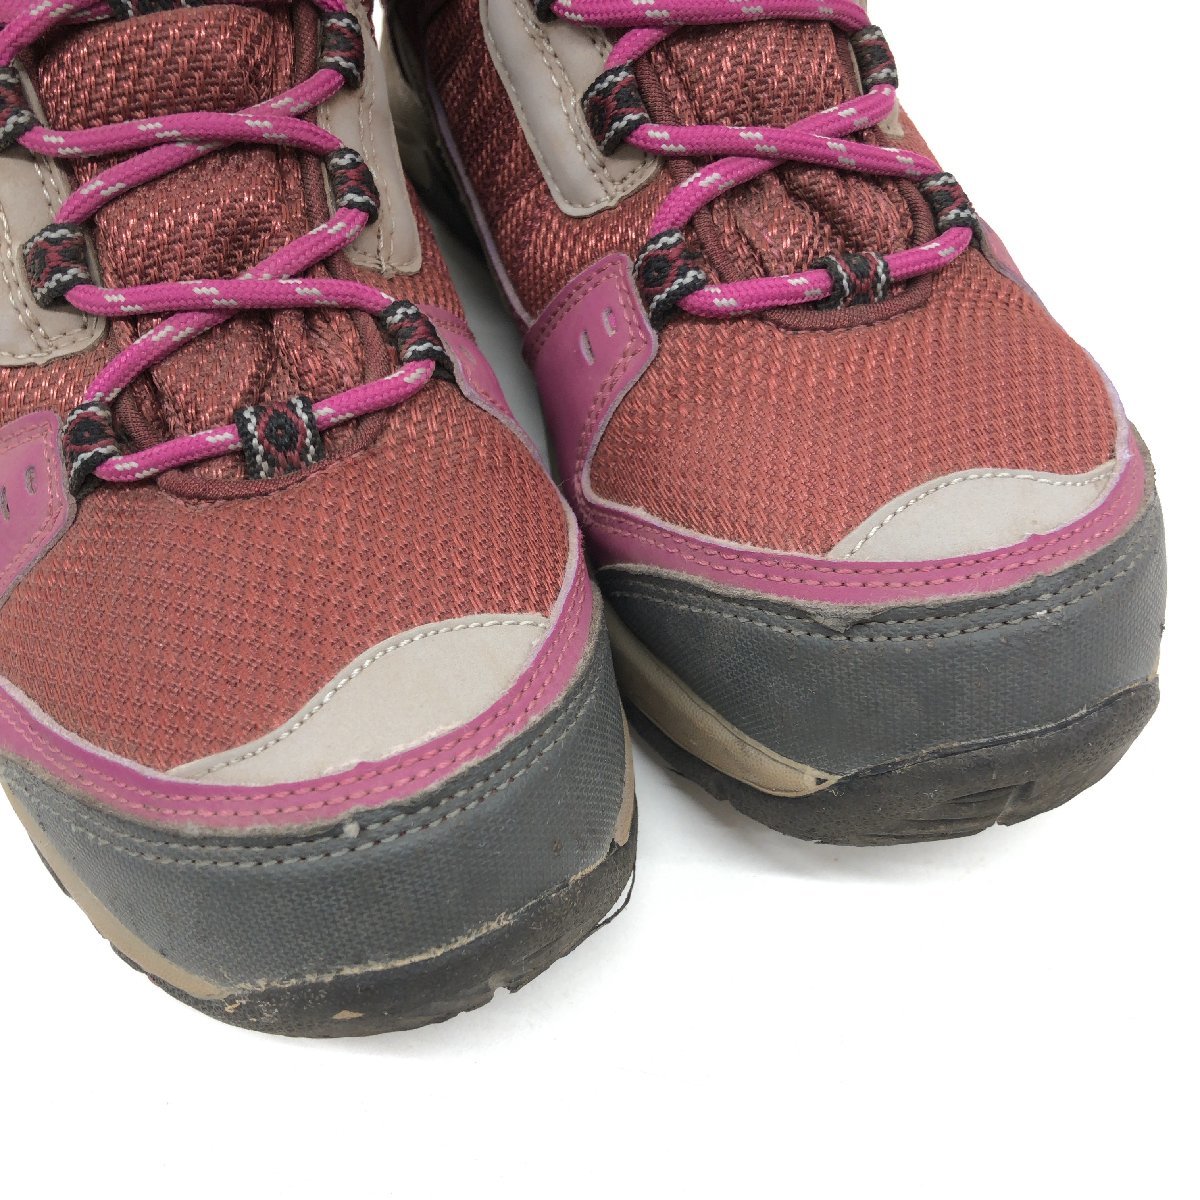 ●HI-TEC ハイテック ウォータープルーフ トレッキングシューズ 22.5cm ピンク系 アウトドアシューズ 登山靴 ハイキング レディース 女性用の画像9